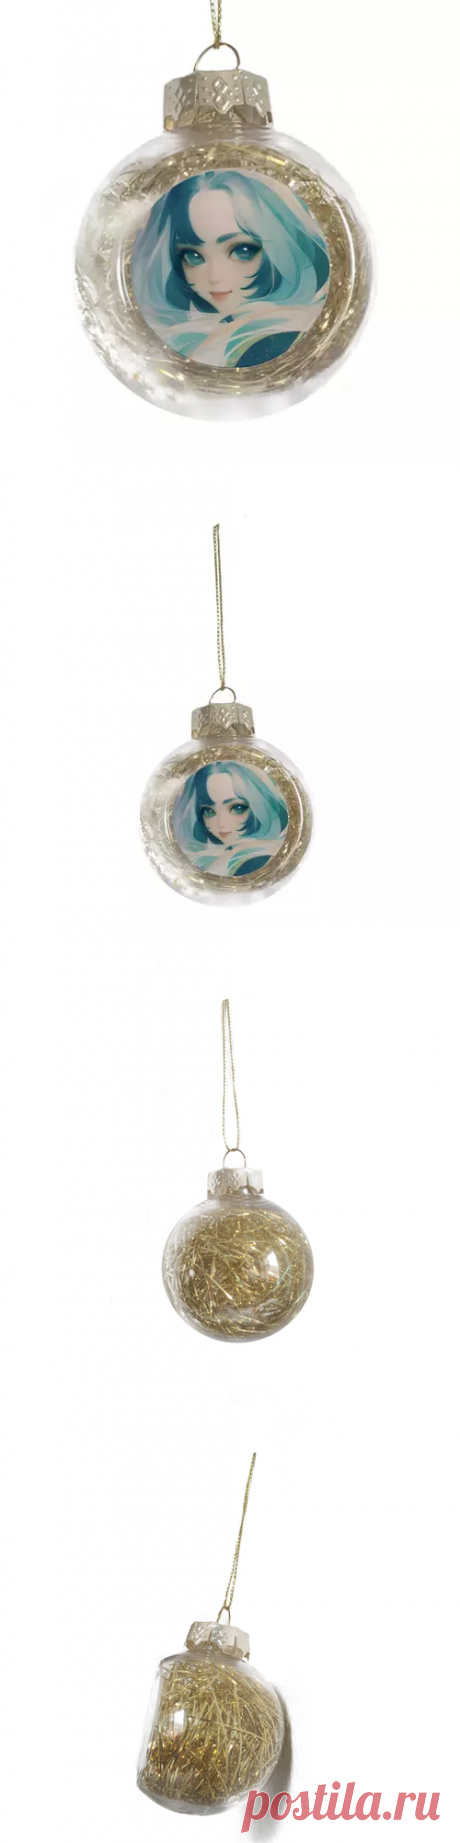 Ёлочная игрушка Девушка с голубыми волосами #4797533 в Москве, цена 450 руб.: купить ёлочное украшение с принтом от Anstey в интернет-магазине